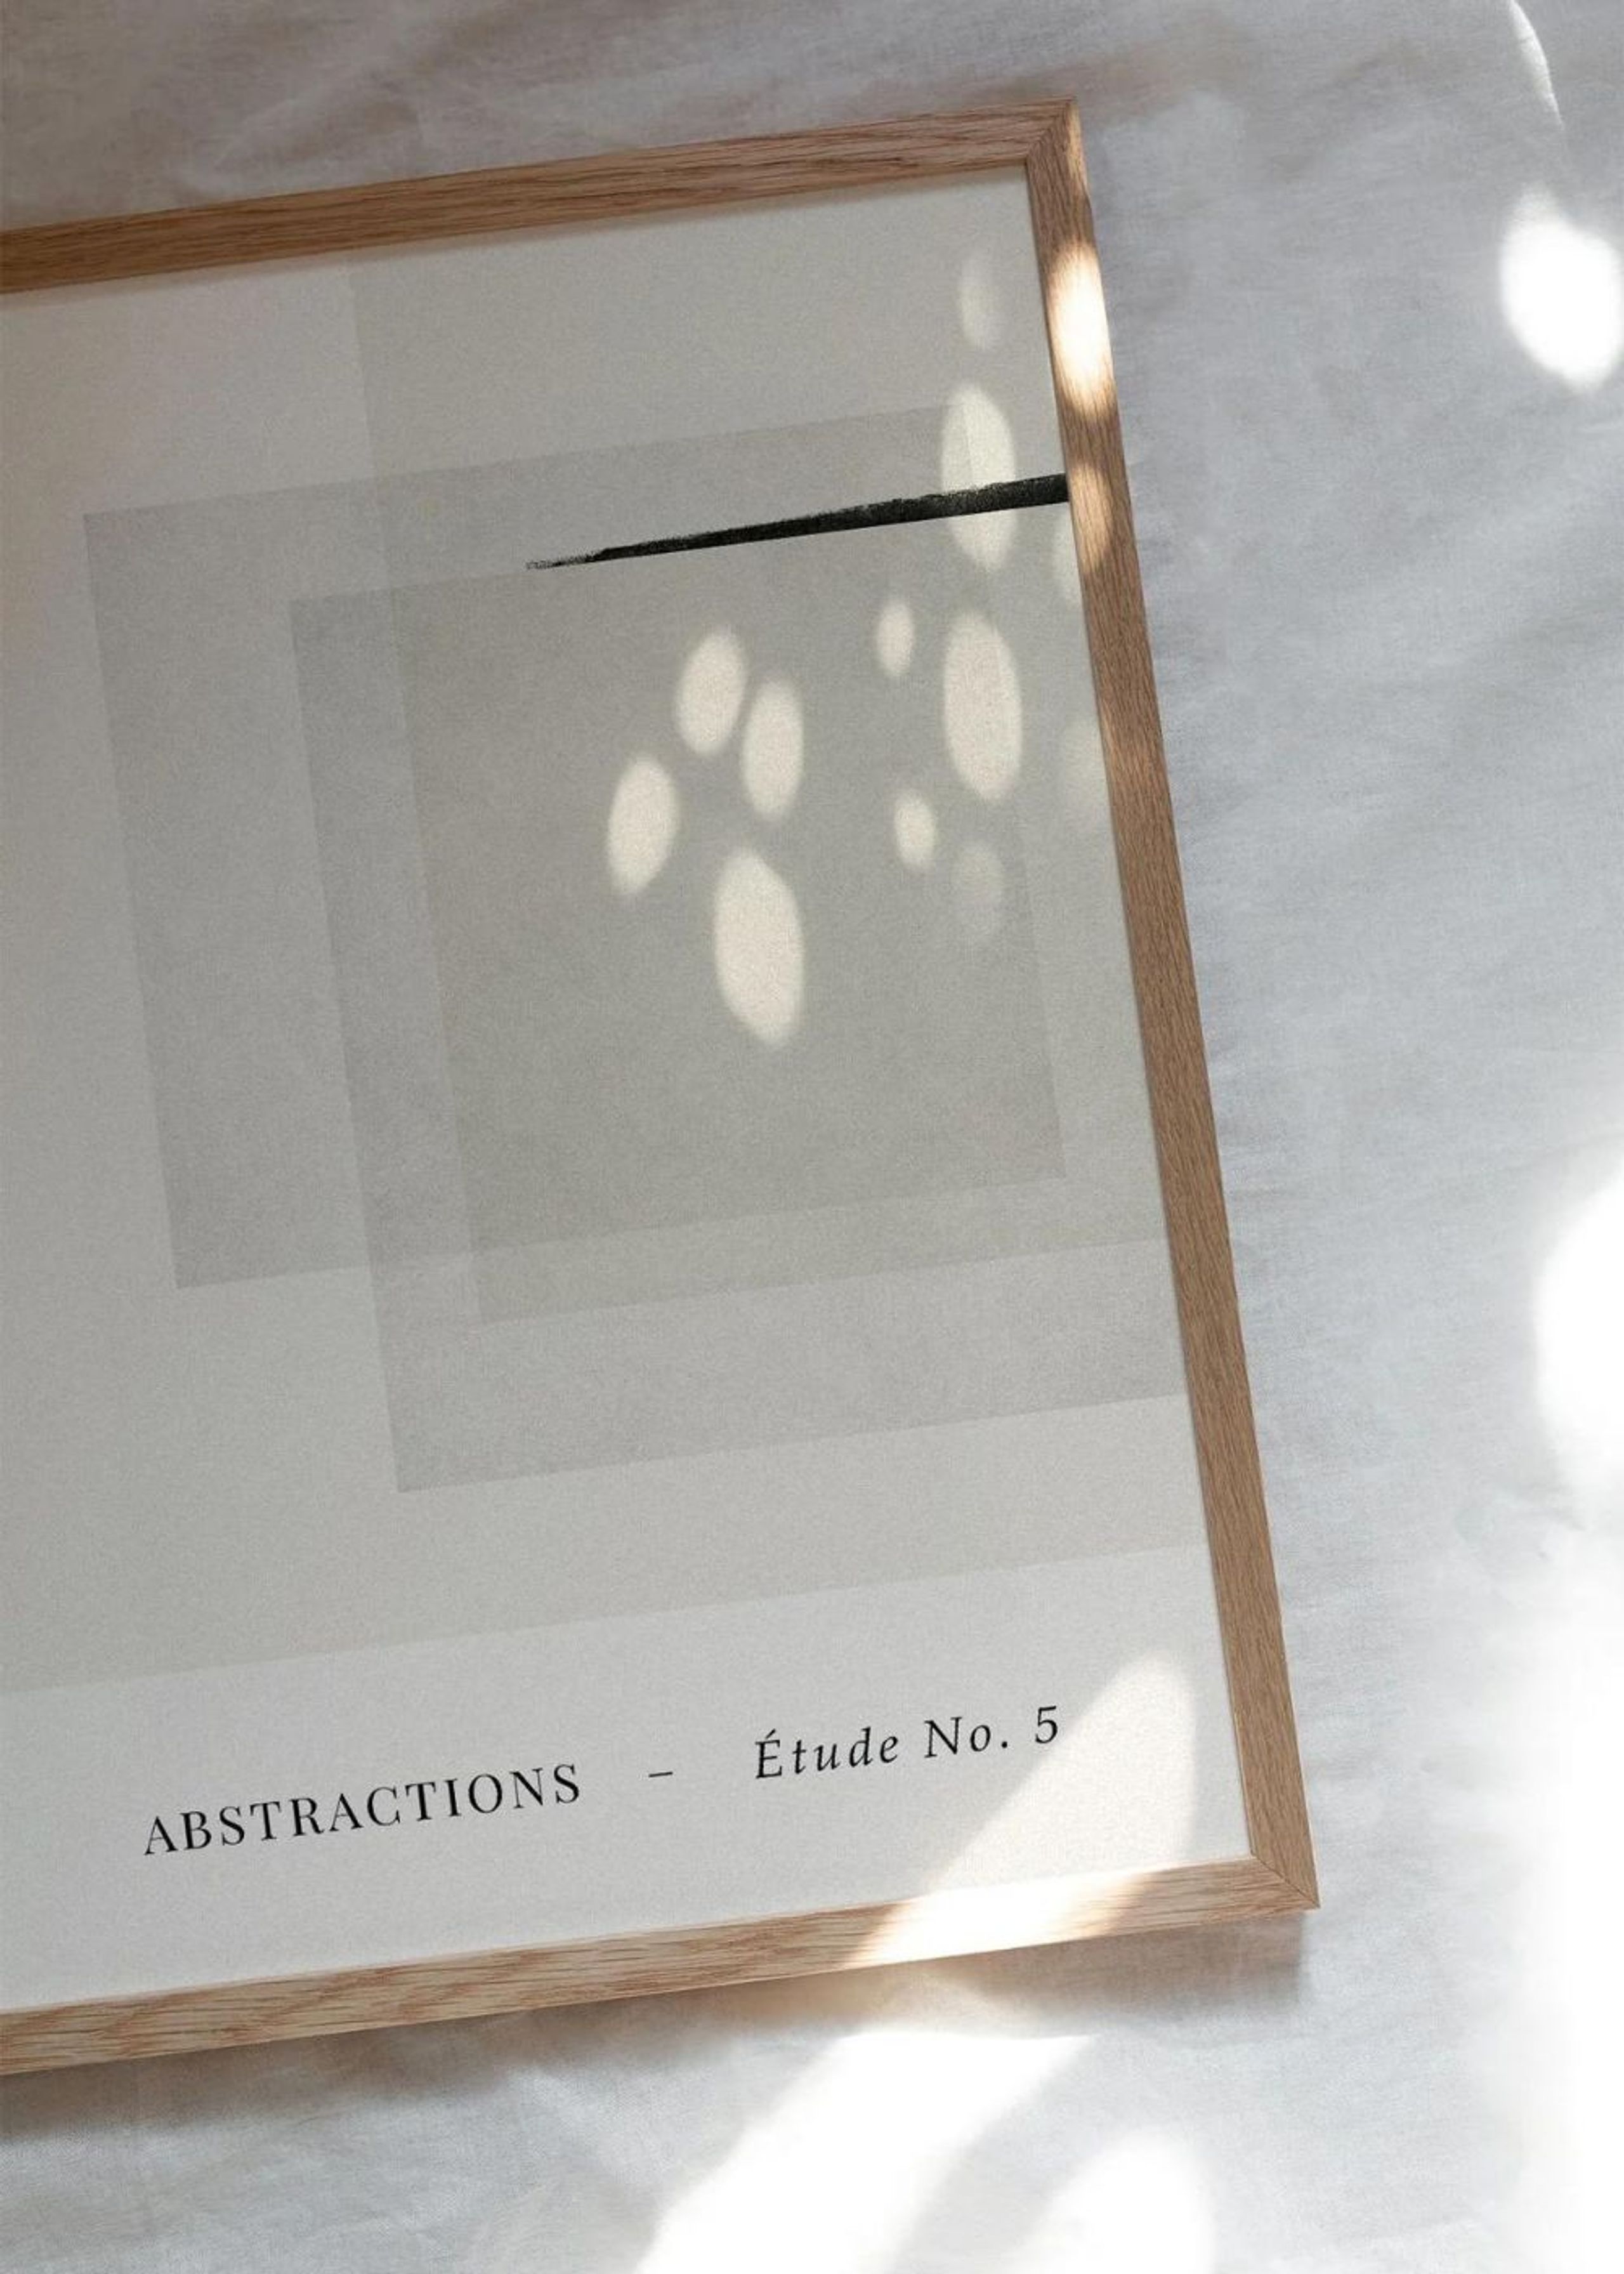 Peléton - Poster - Abstractions Etude No 5  - Abstractions Etude No 5